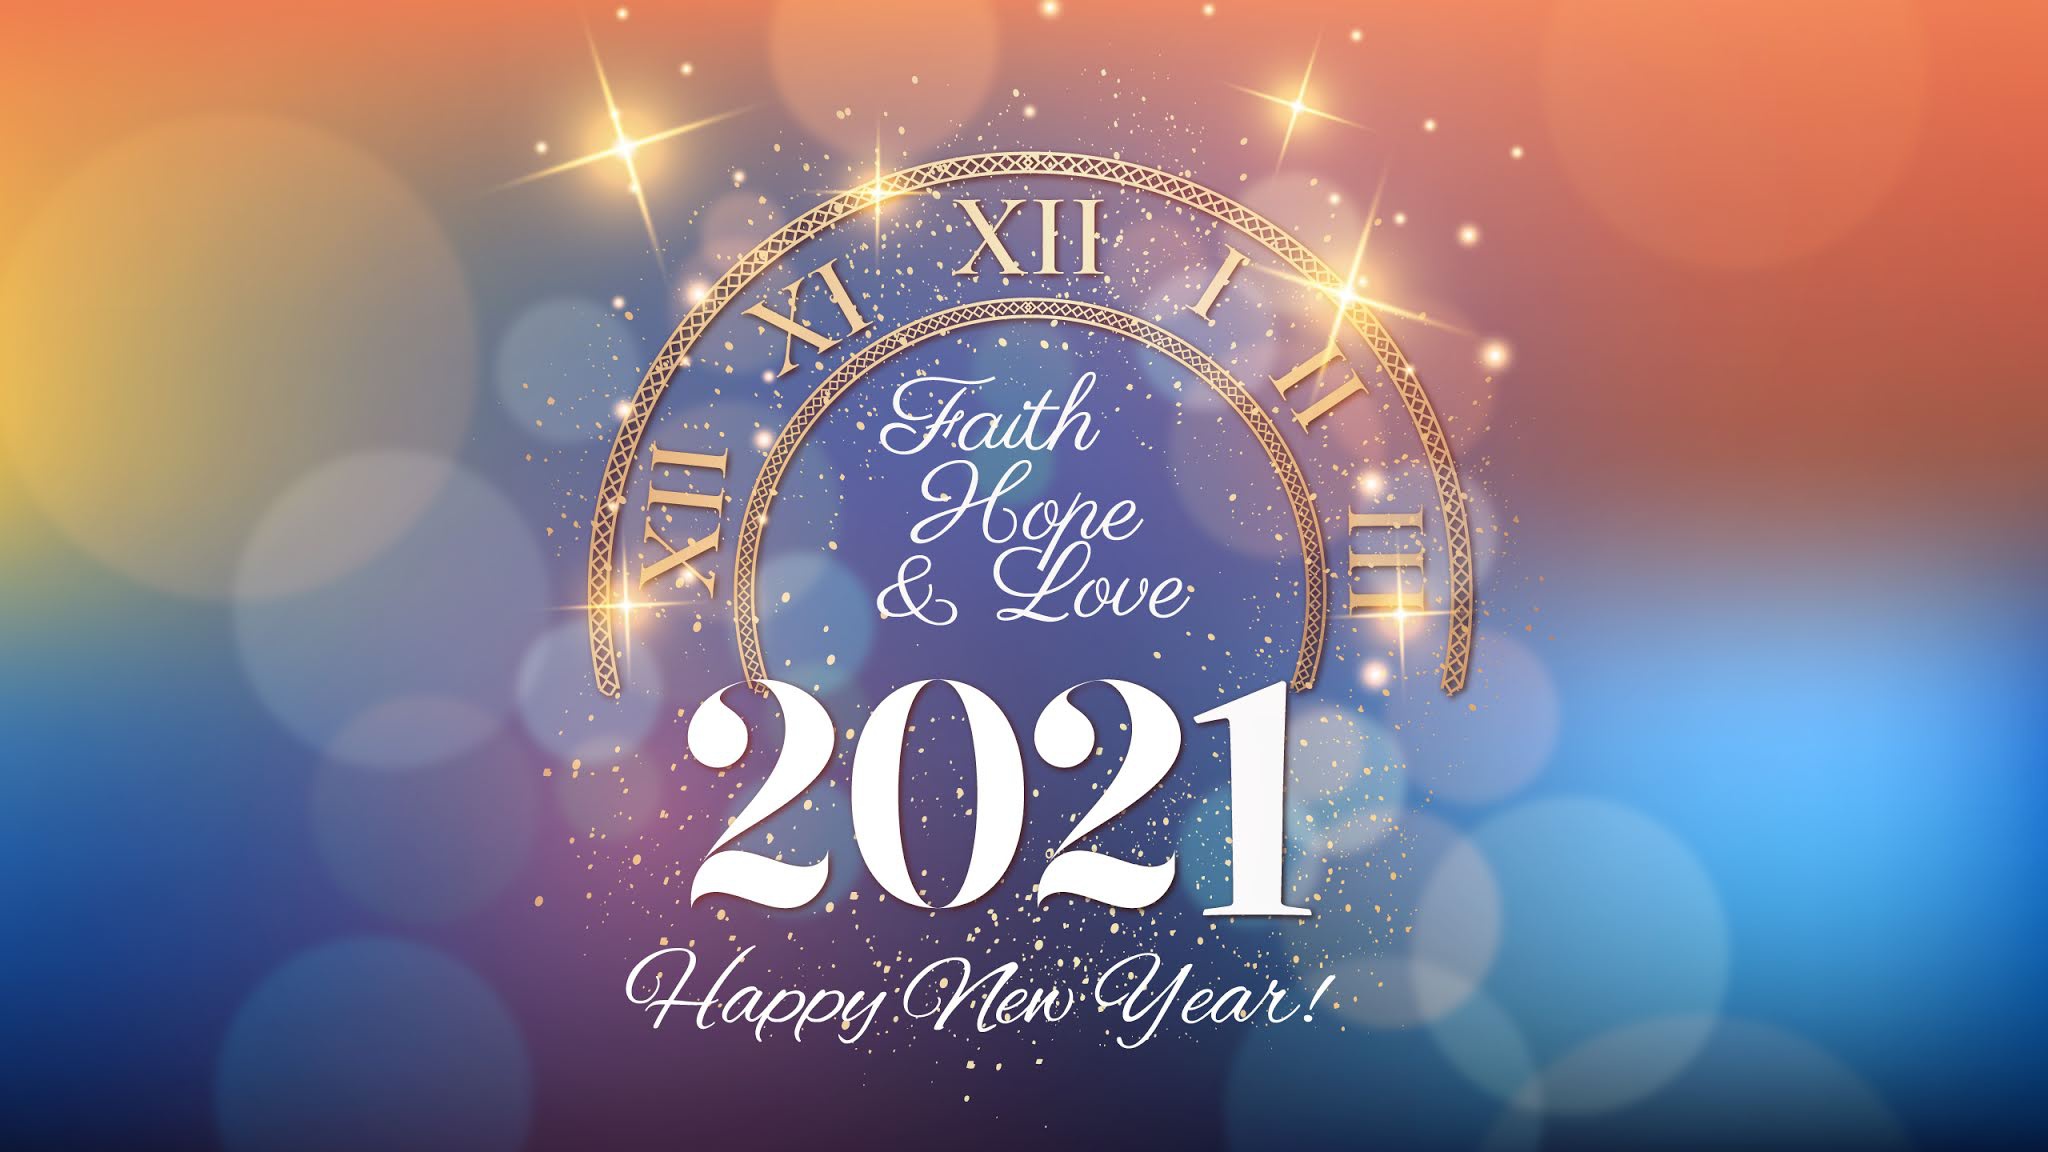 Новый год 2021 дней. С новым годом 2021. Обои на новый год 2021. Счастливого нового года 2021. Новогодние обои Happy New year.